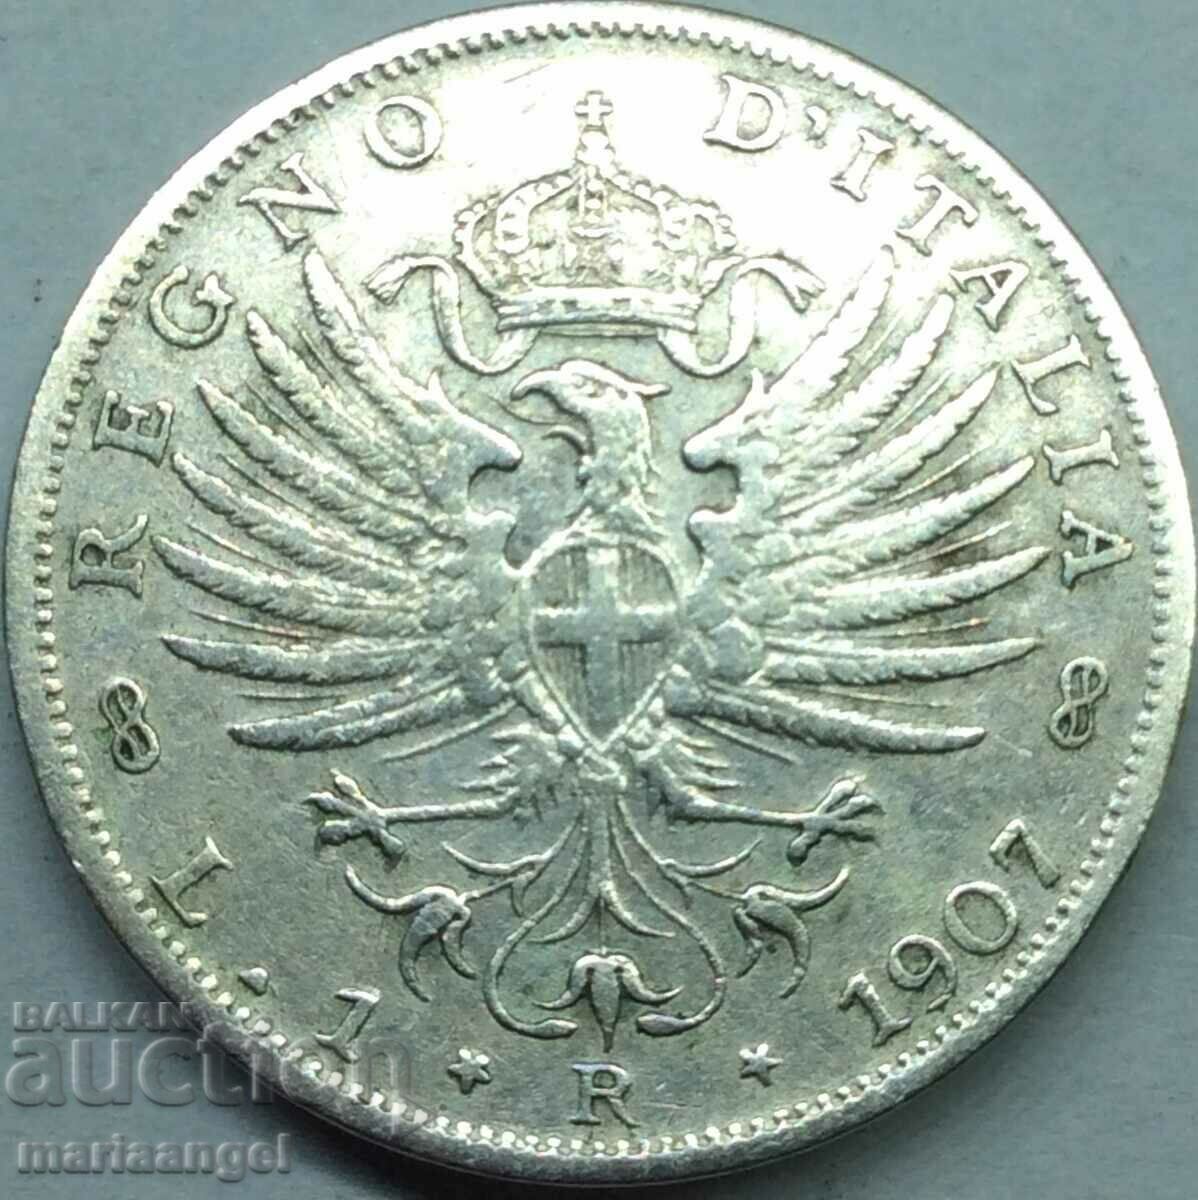 1 lira 1907 Italy Victor Emmanuel silver - quite rare